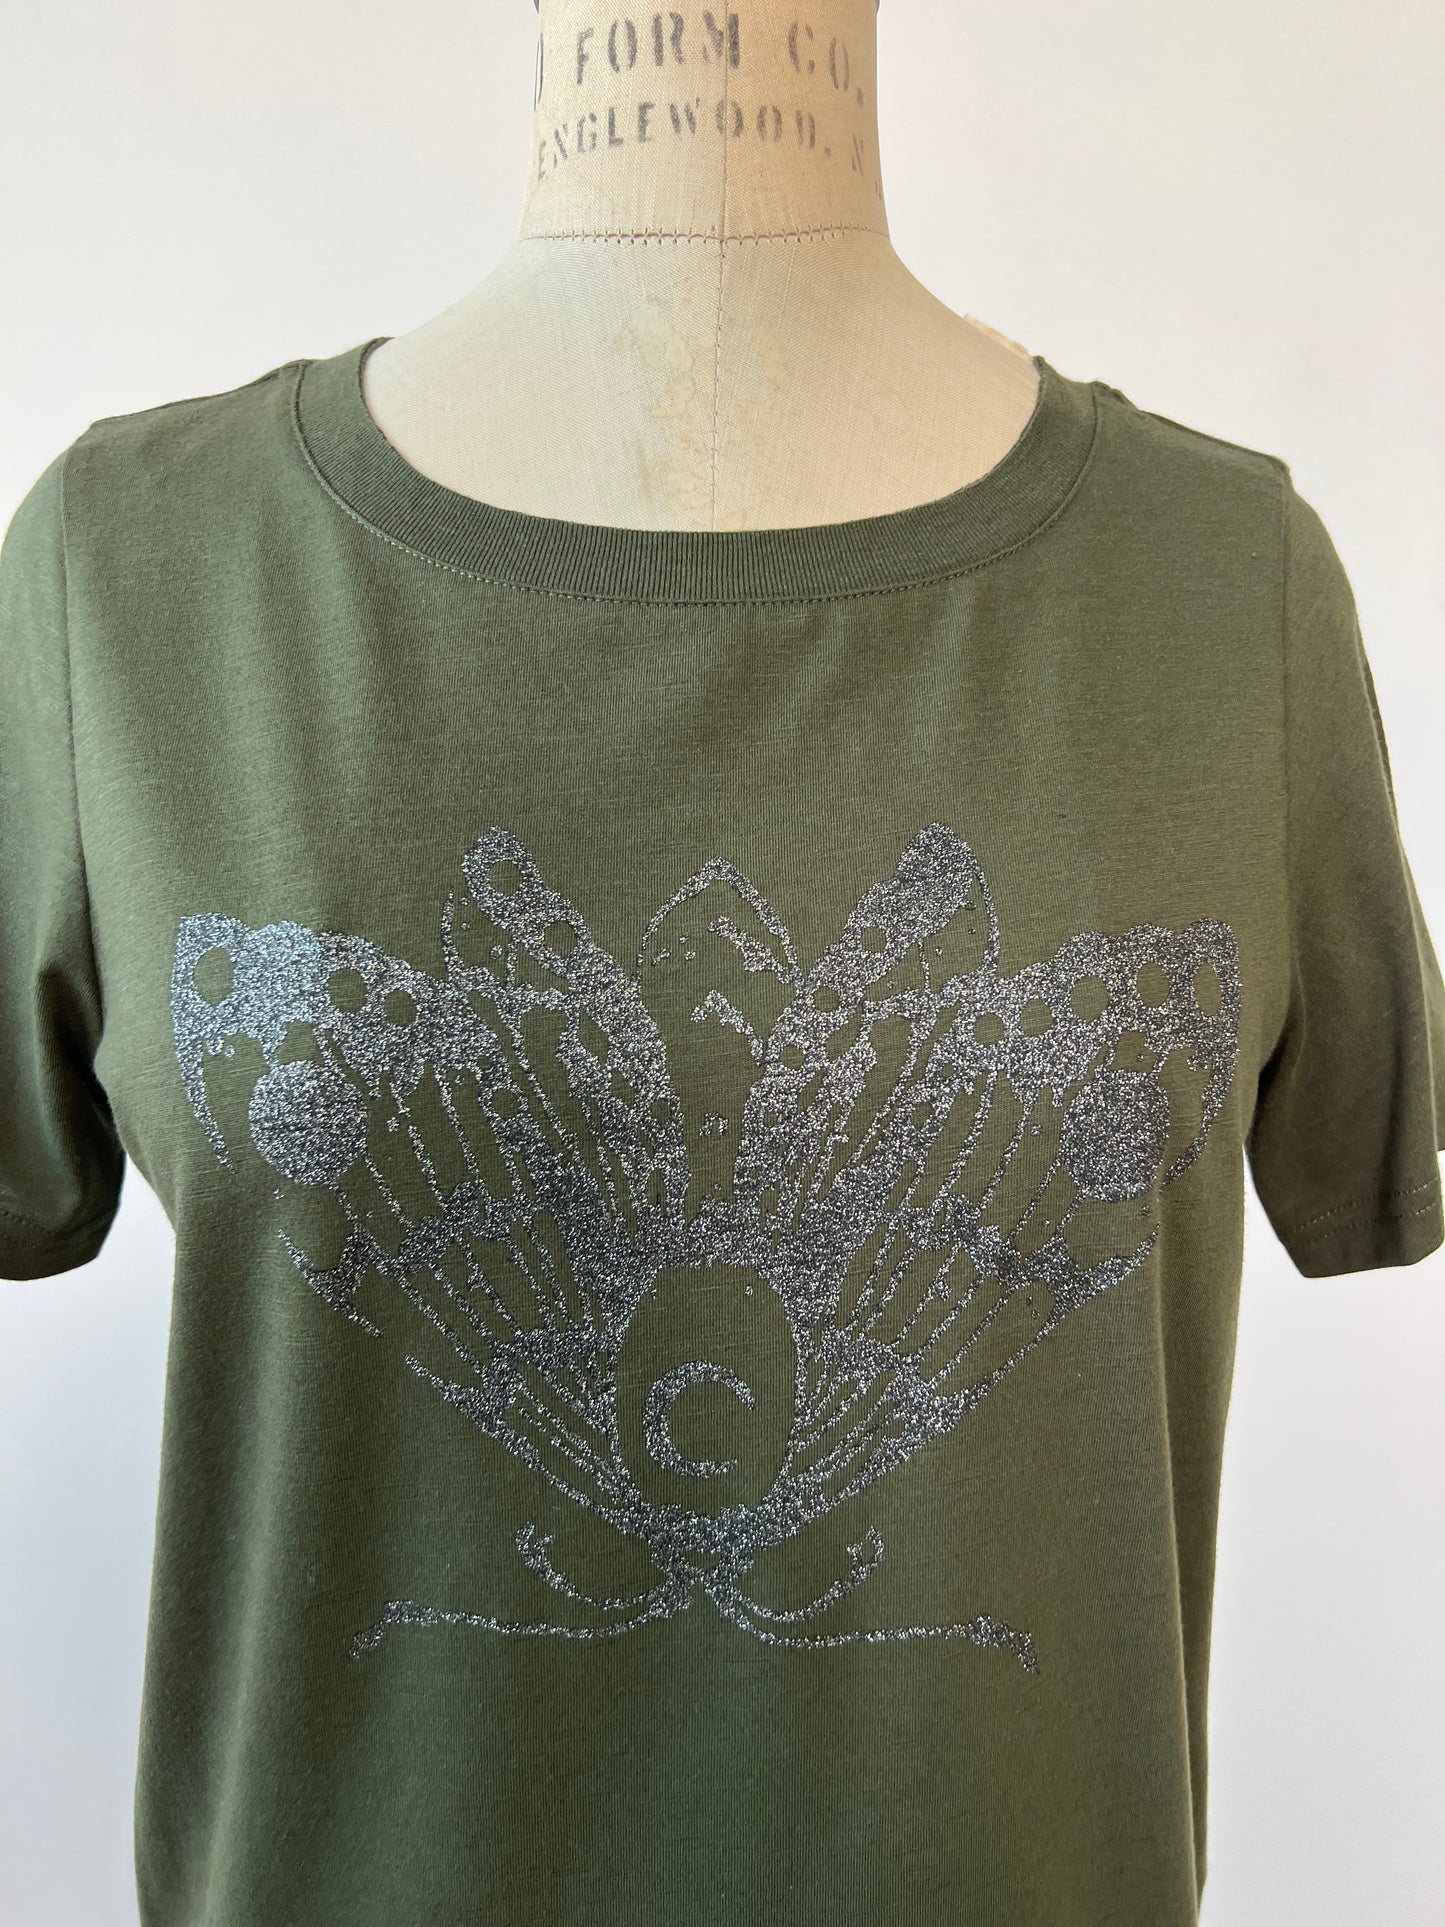 T-shirt kaki à imprimé papillon de lune argenté (S)